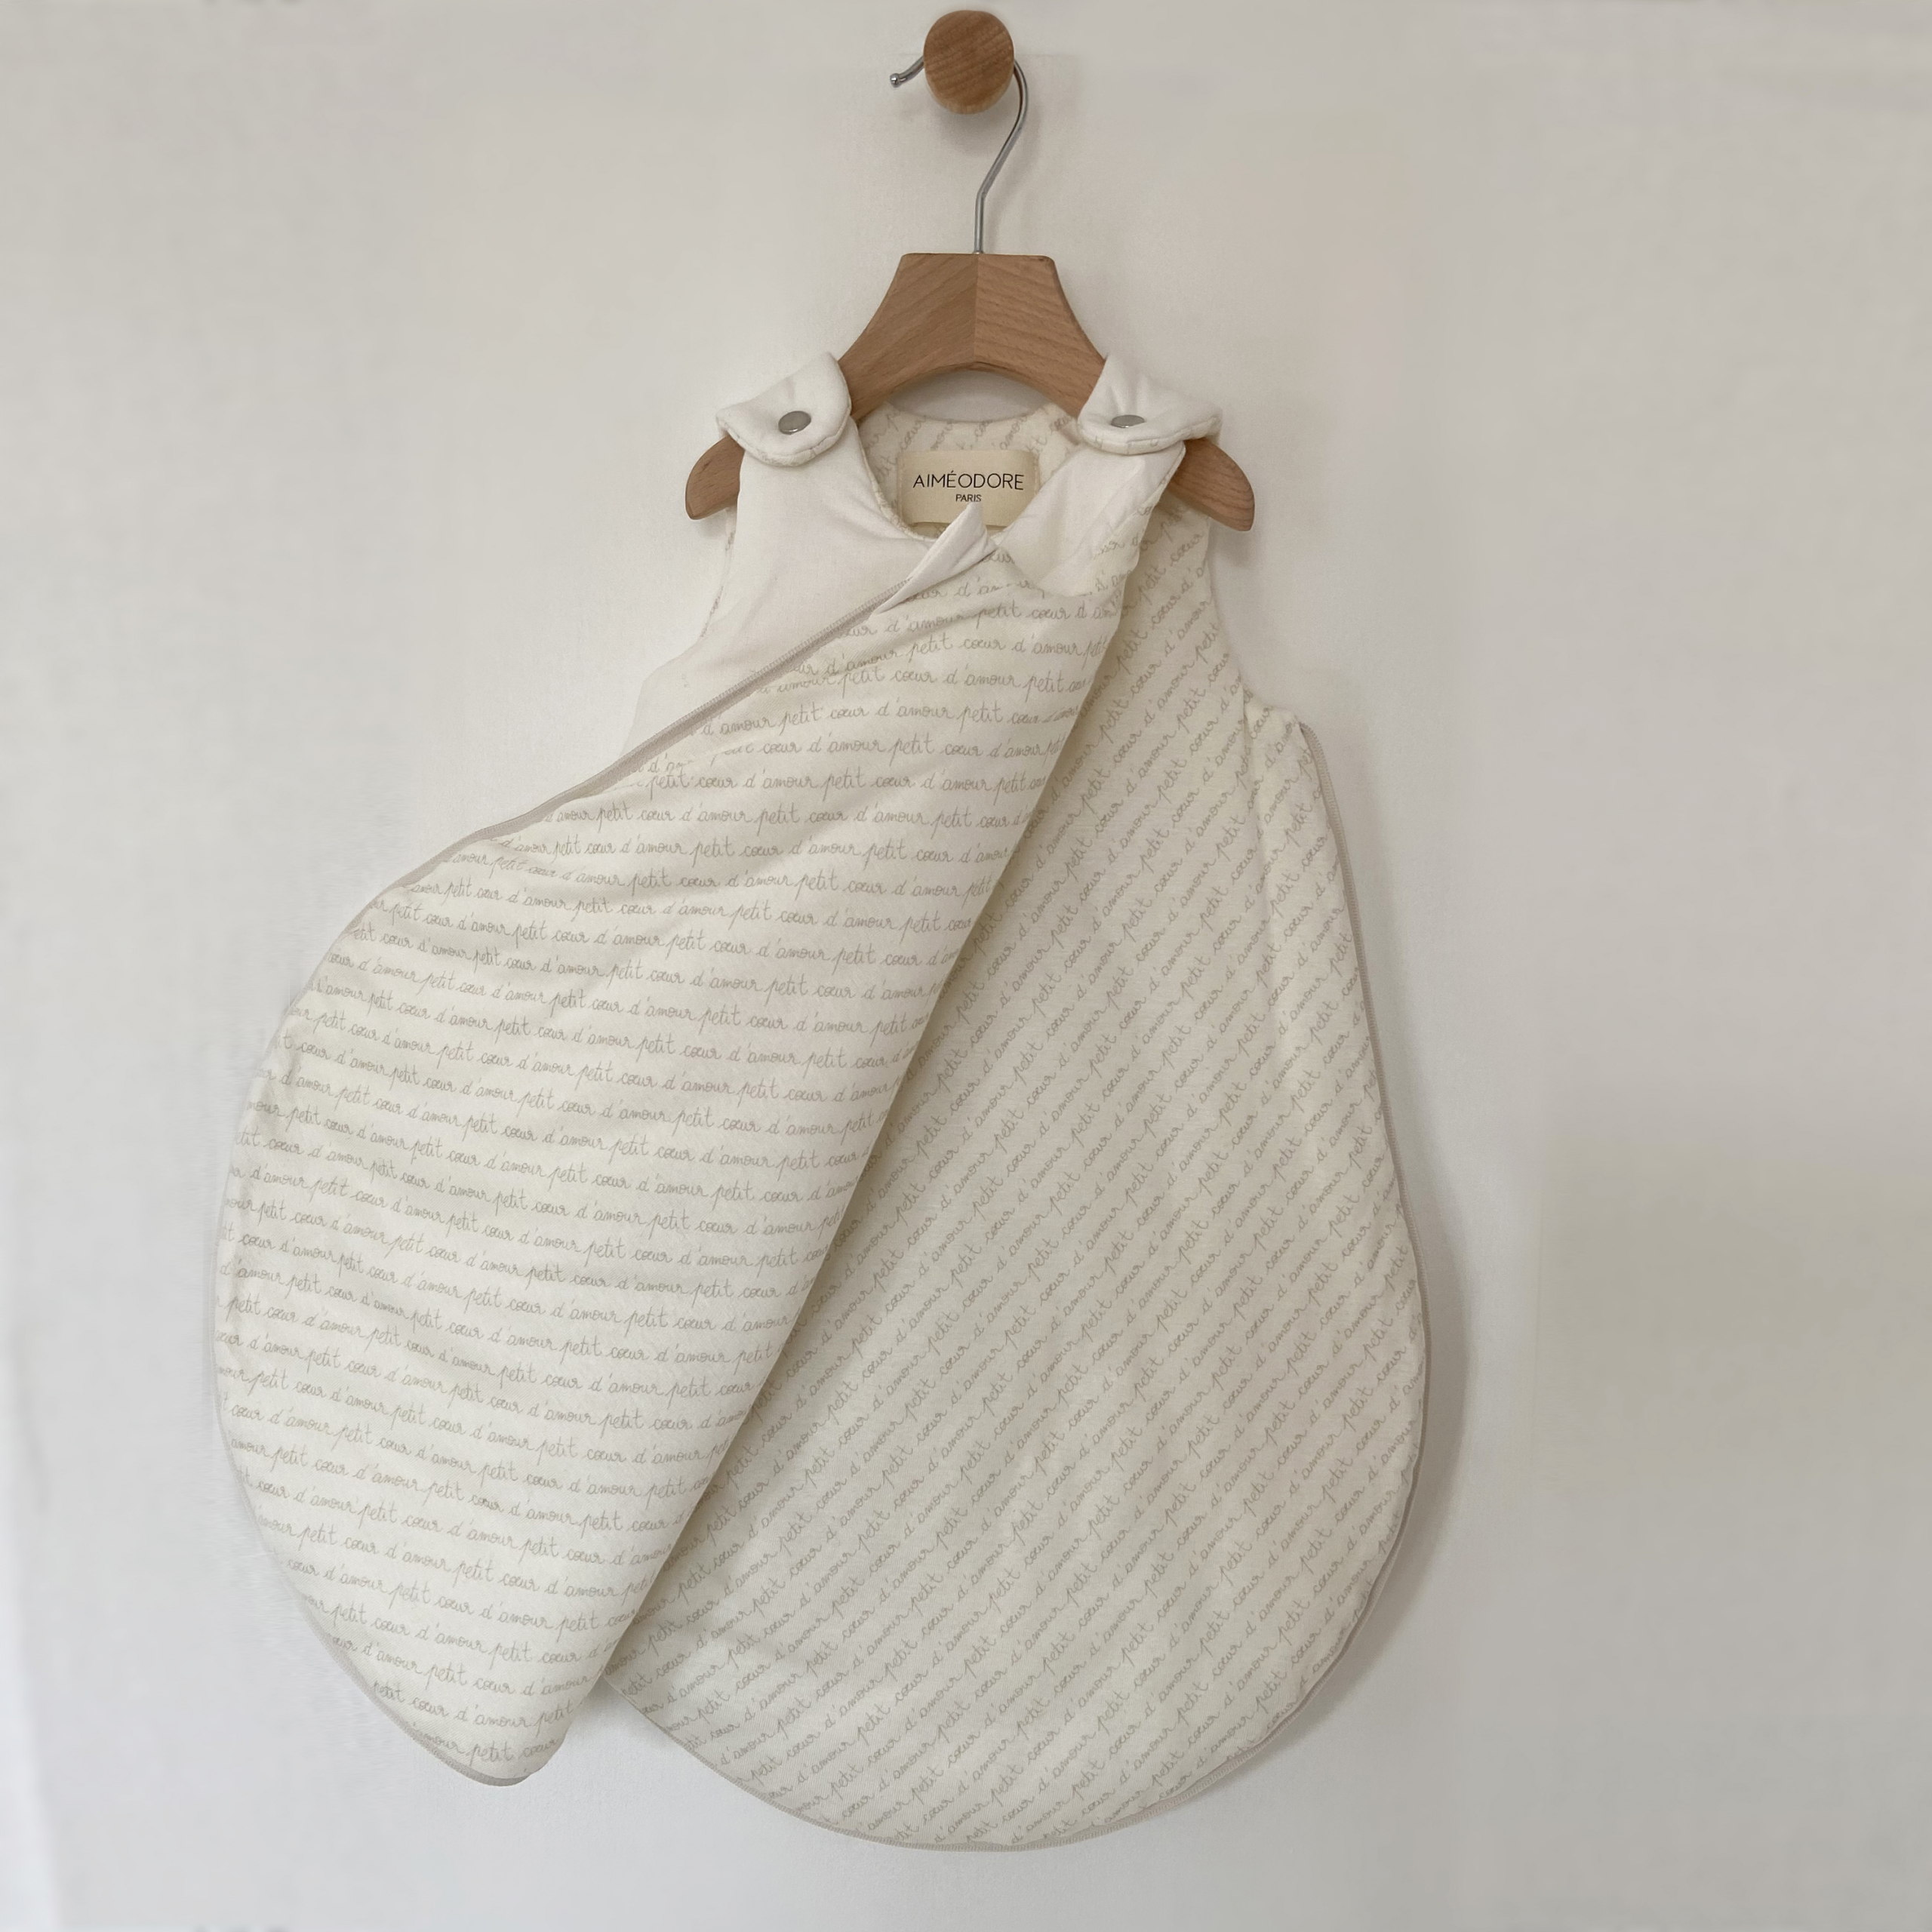 Turbulette Aimeodore Paris Vêtements & accessoires pour bébé, fabriqués en France, éco-responsable & local en coton bio